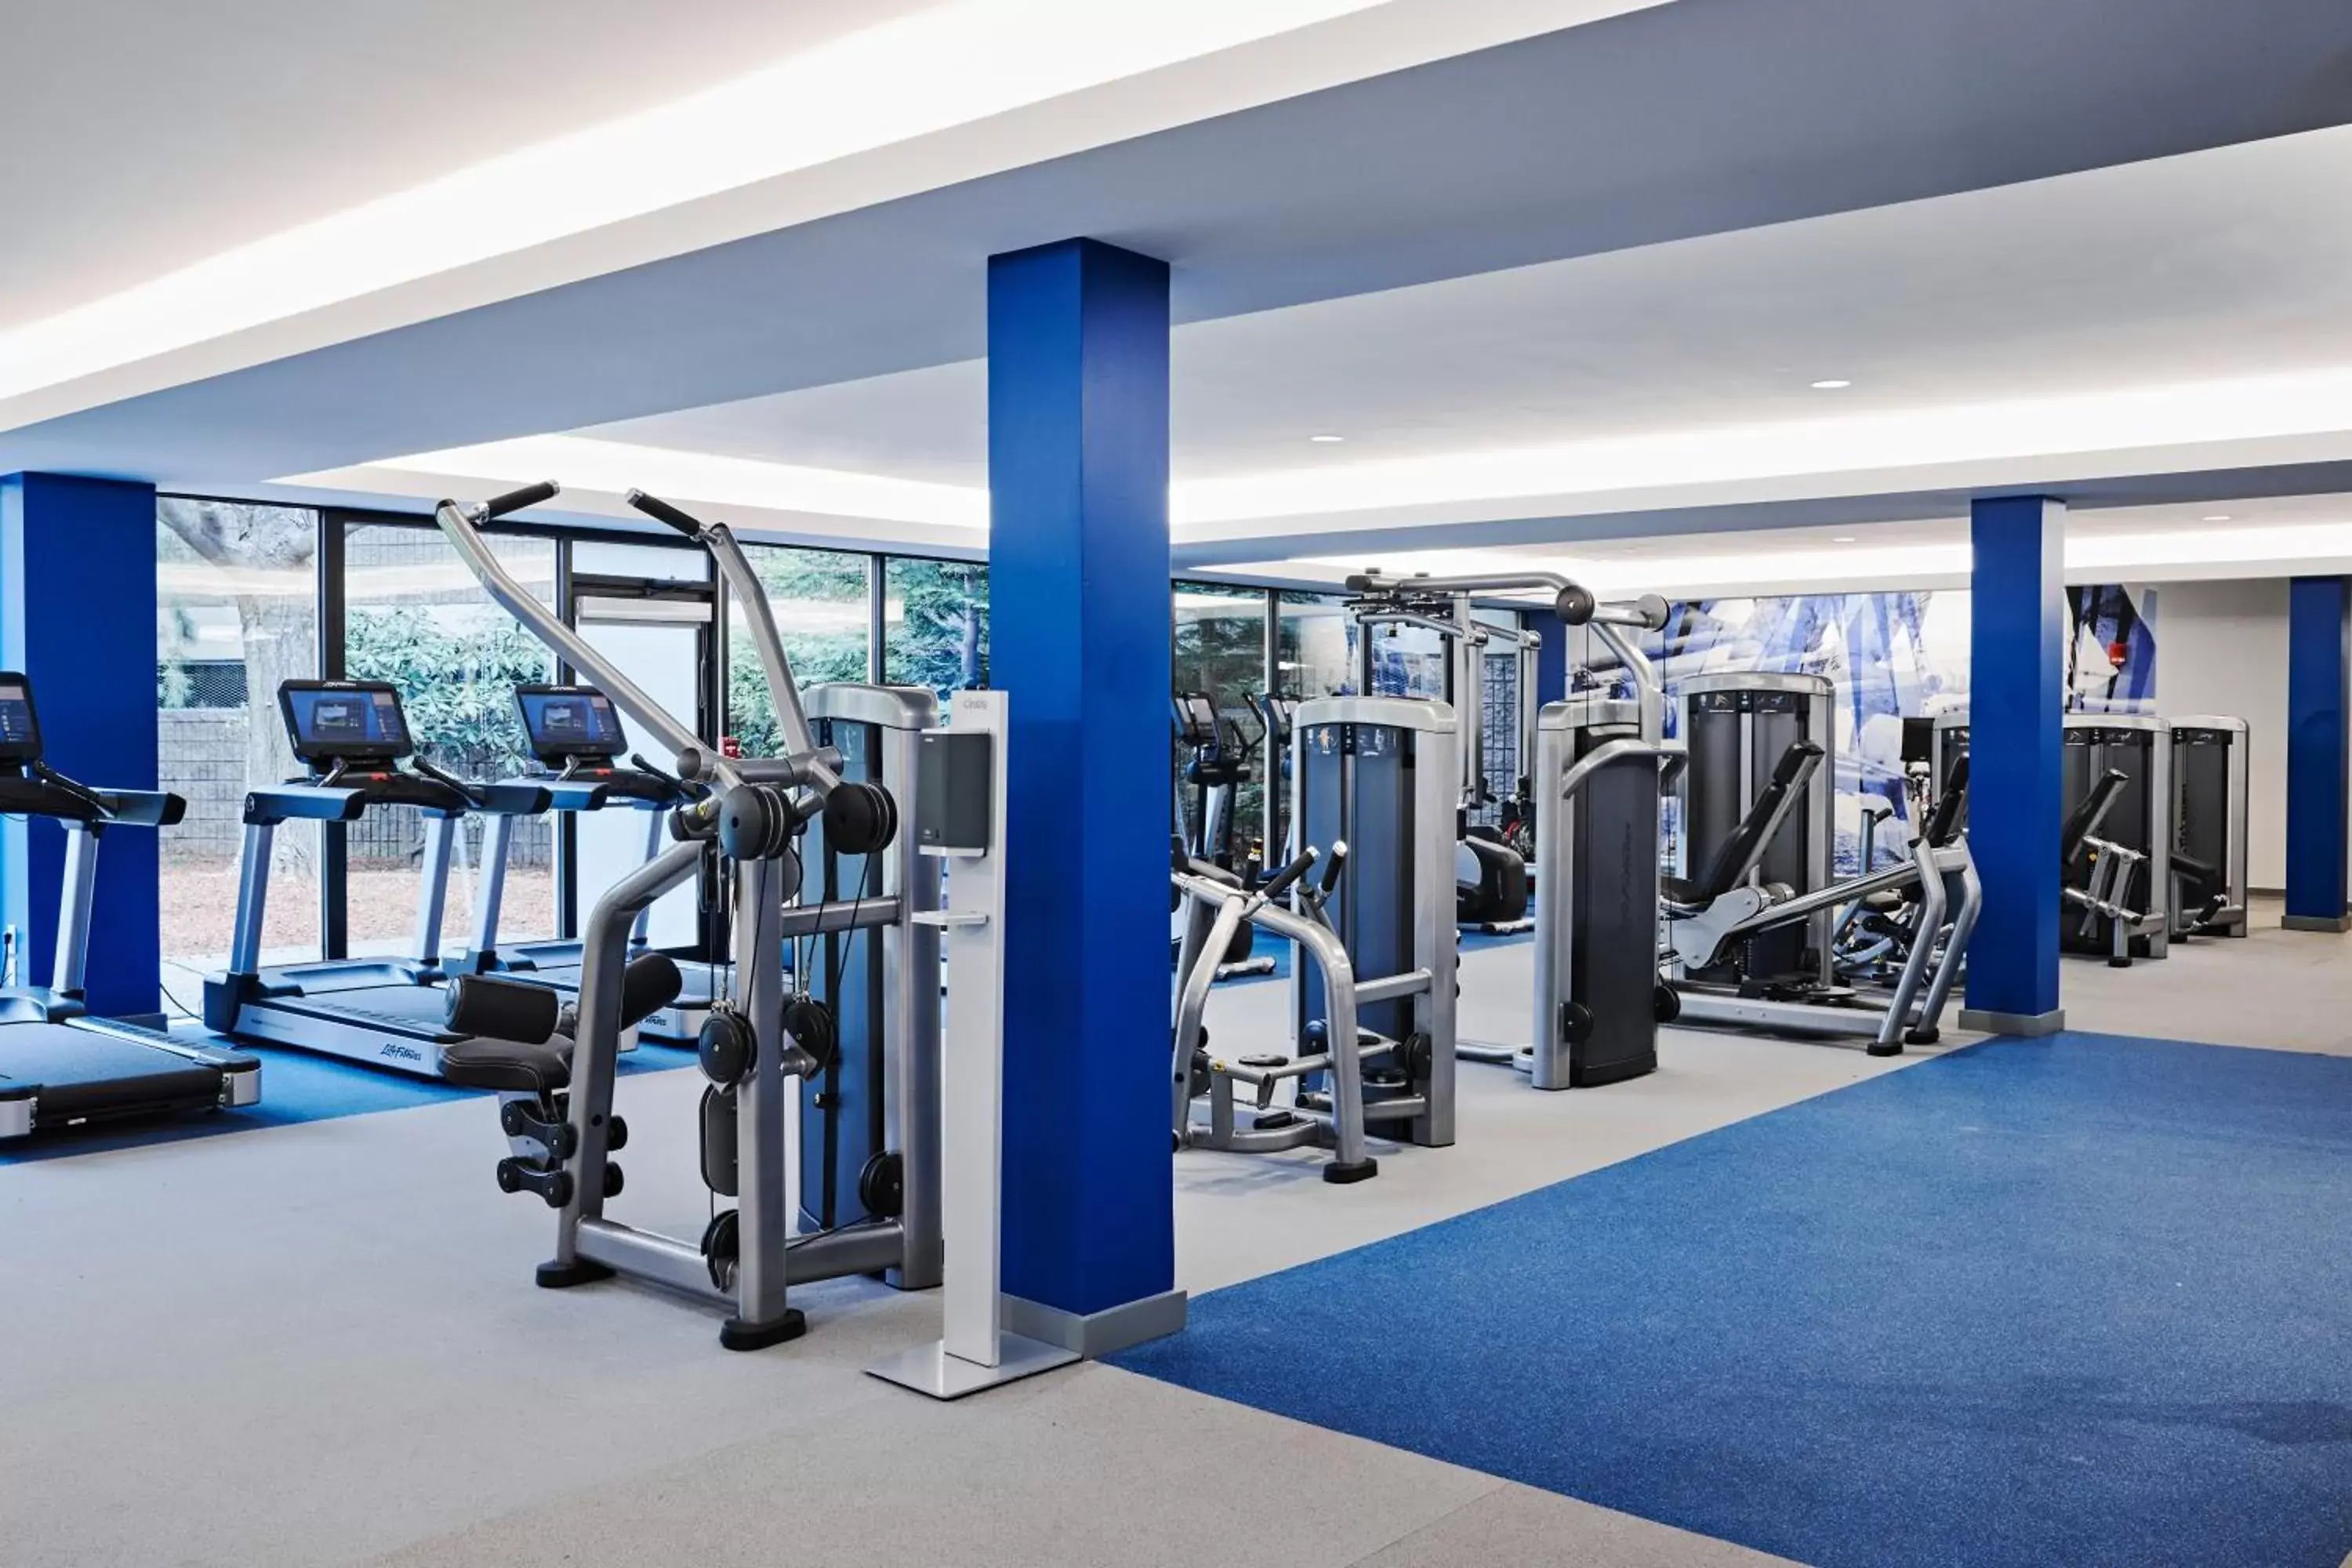 Fitness centre/facilities, Fitness Center/Facilities in Hyatt Regency Boston/Cambridge